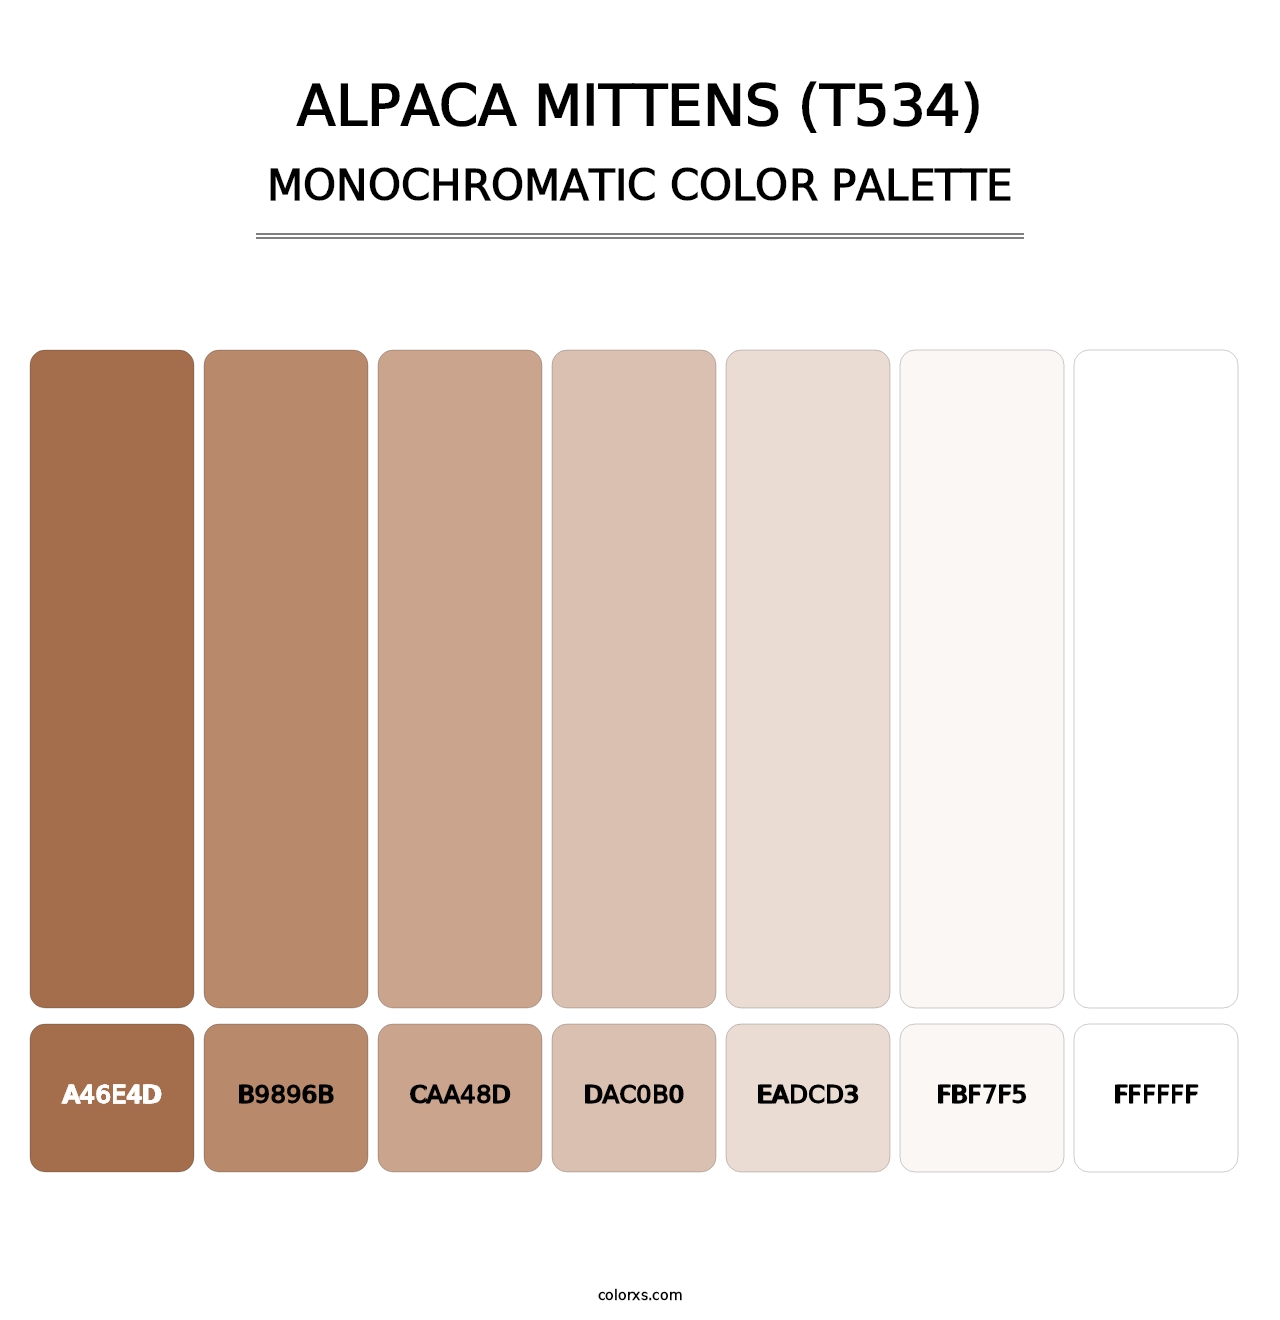 Alpaca Mittens (T534) - Monochromatic Color Palette